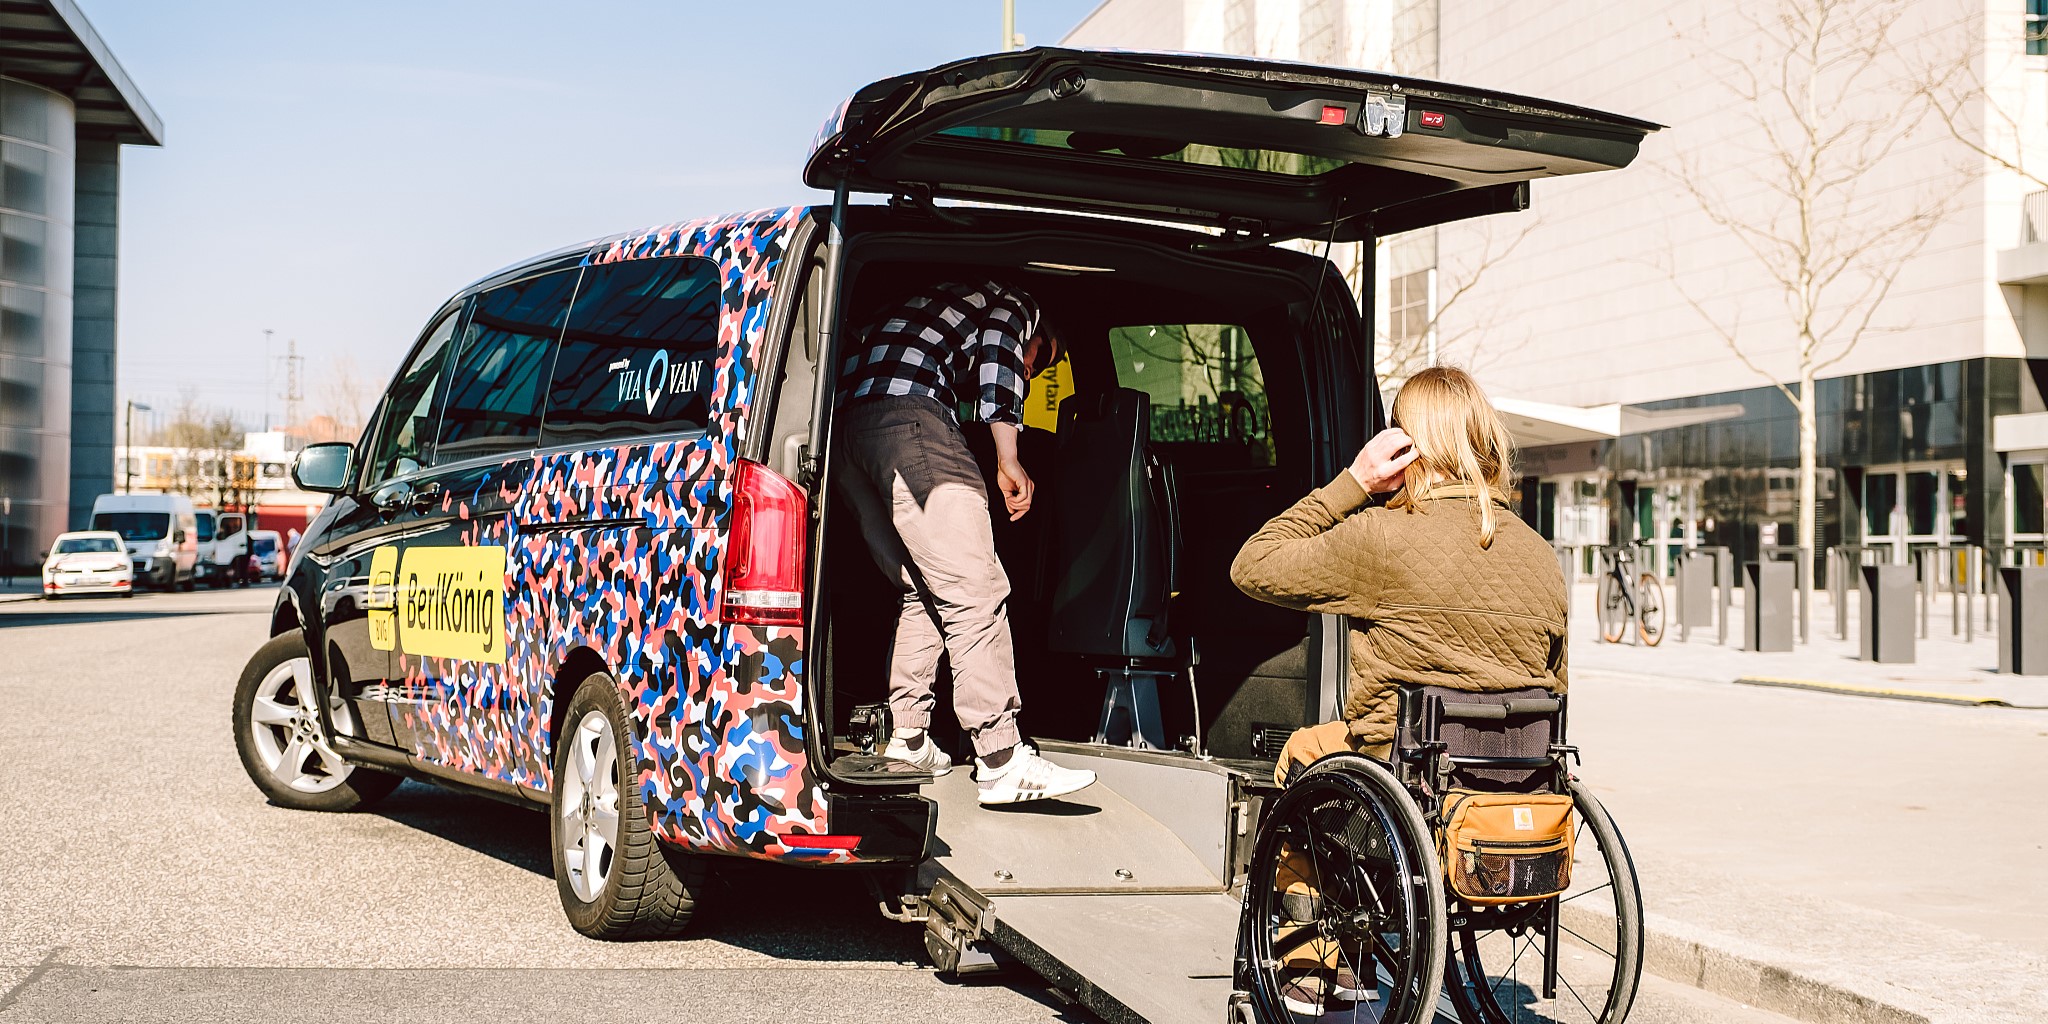 Im Bild ist ein rollstuhlgerechter Van des Tochterunternehmens der BVG namens 'Berlkönig' zu sehen. Vor der Rampe wartet eine Person im Rollstuhl, während eine weitere Person den Einstieg vorbereitet.